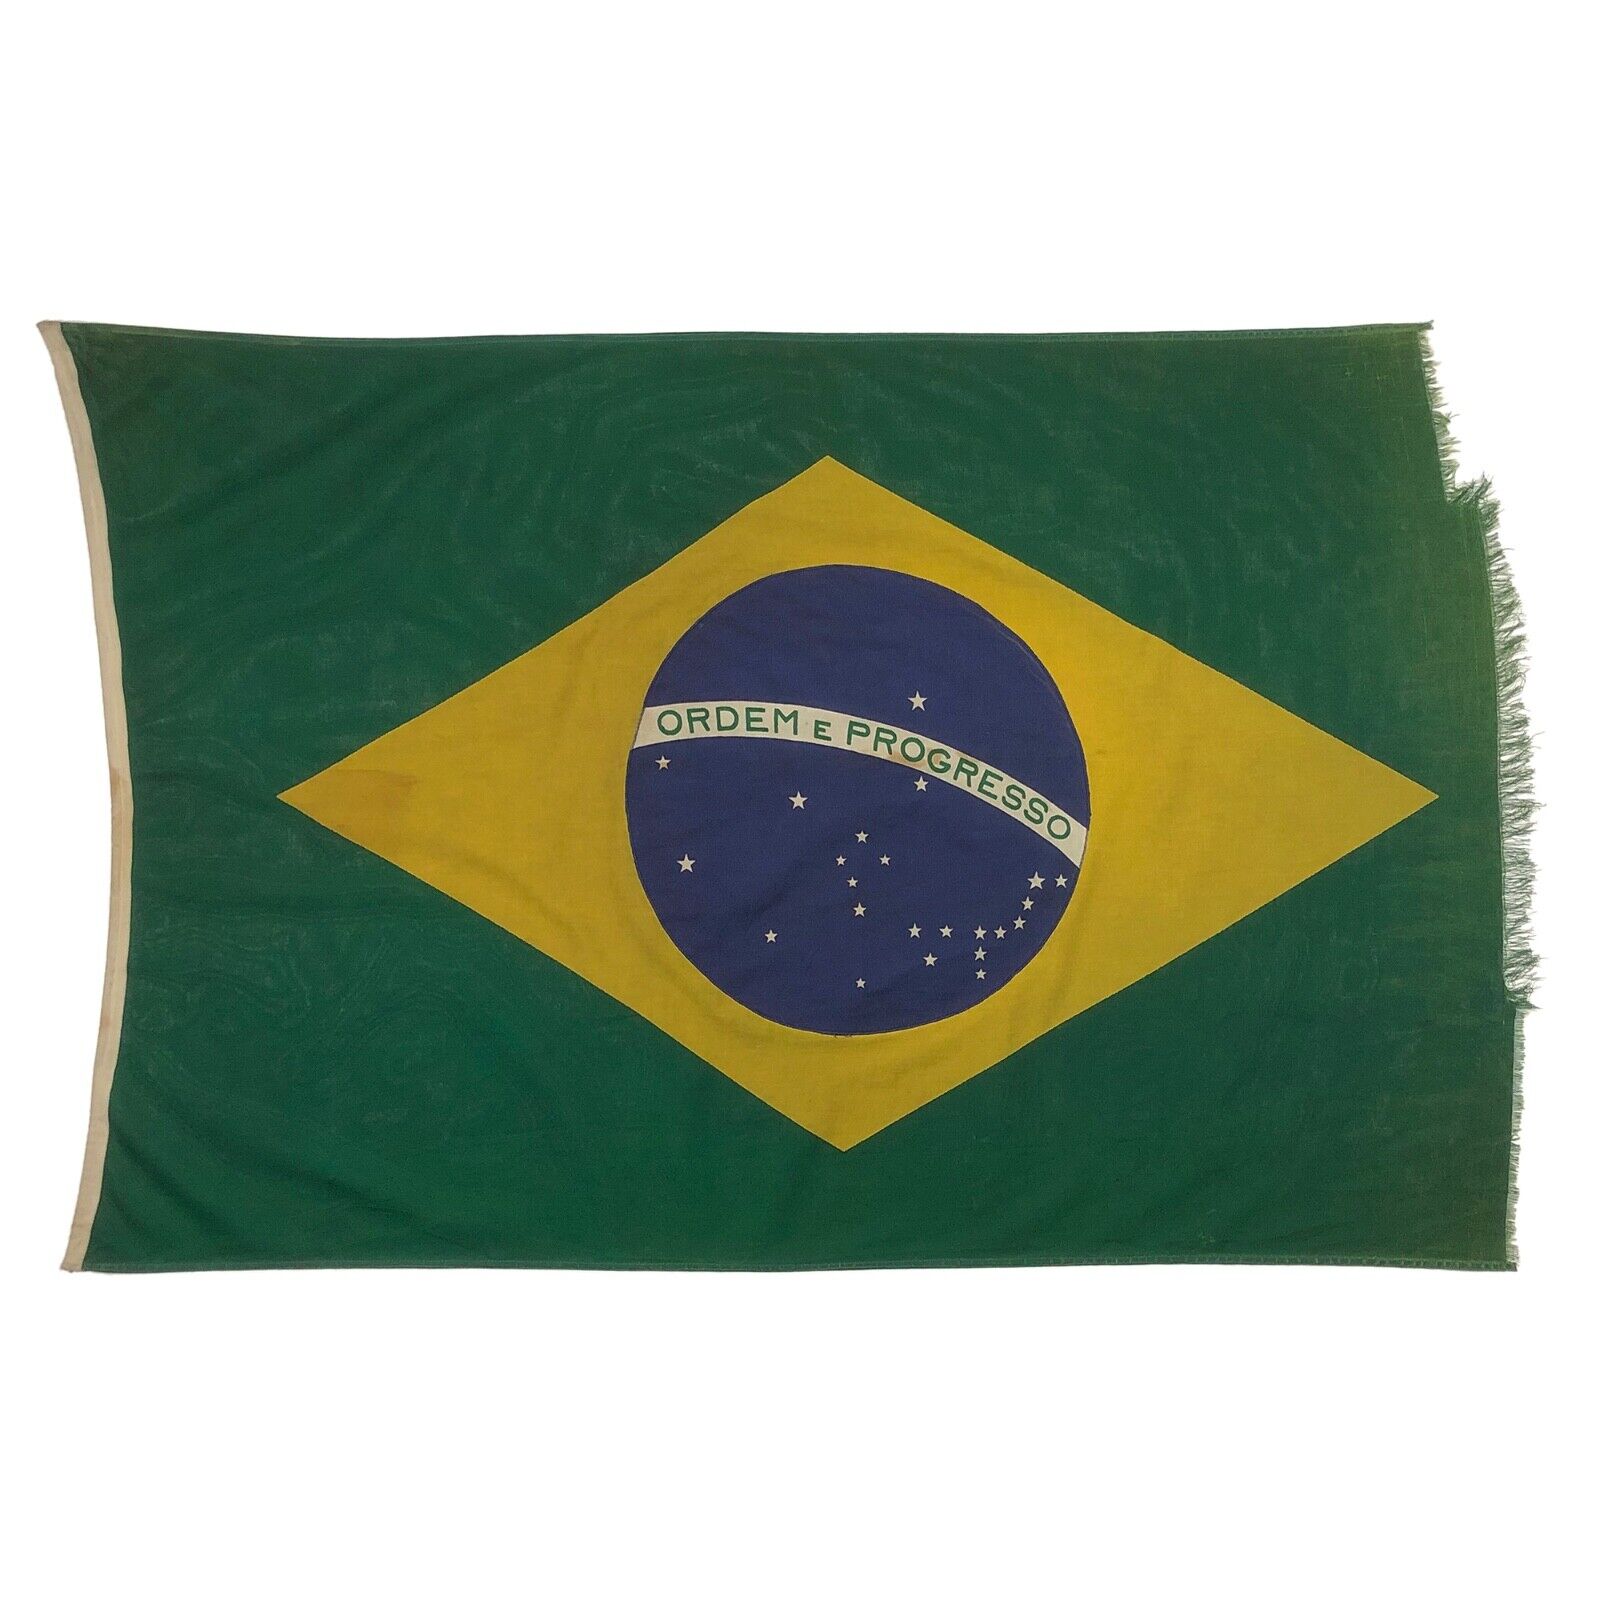 Vintage Cloth Brazilian Flag Distressed Cotton Antique Brazil Textile Art Decor